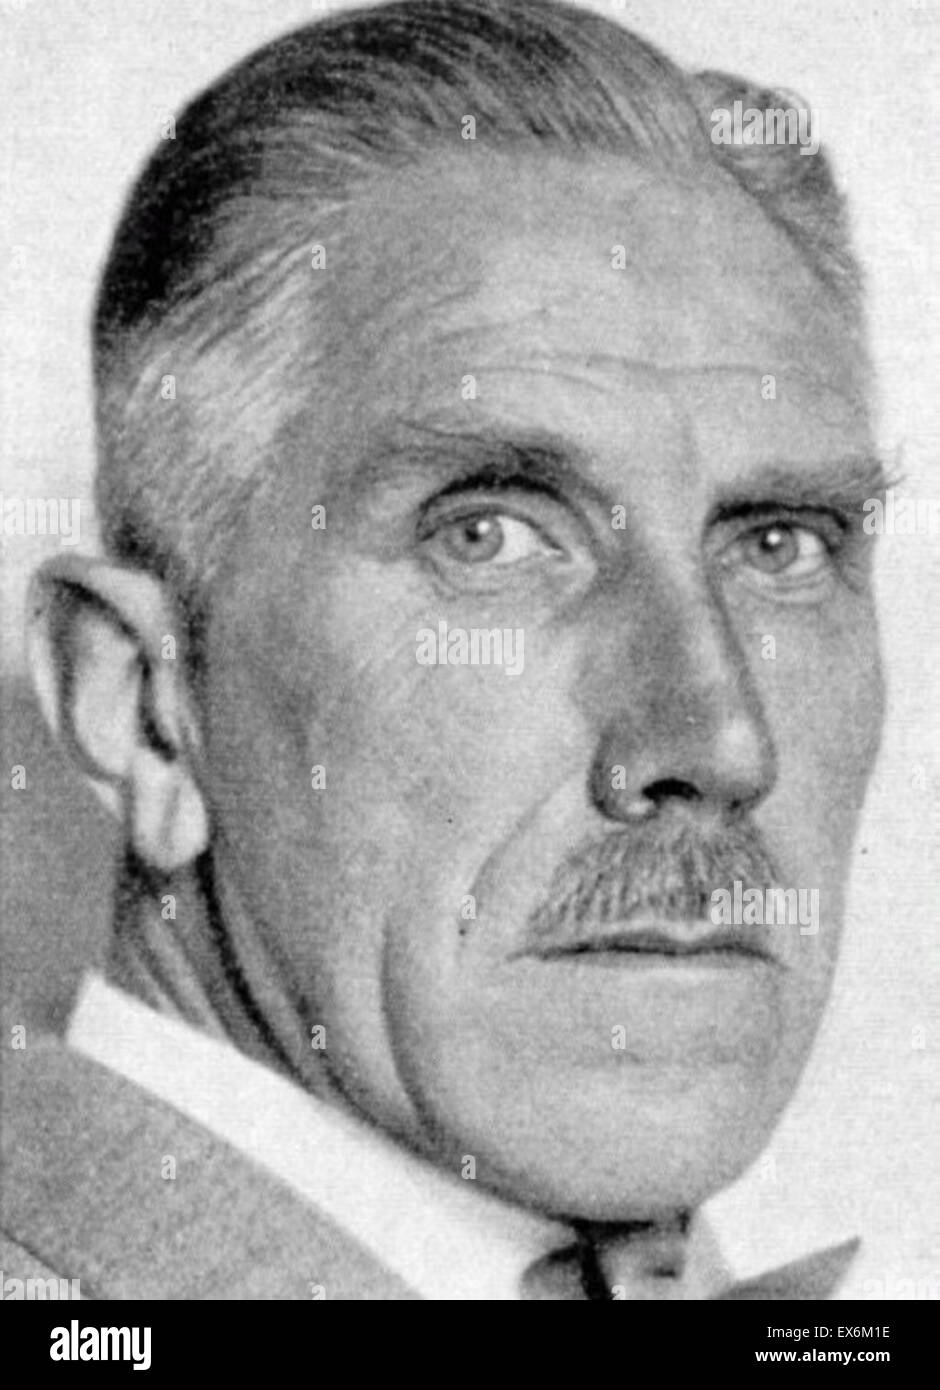 Franz von Papen zu Köningen (1879 - 2 de mayo de 1969) fue un aristócrata alemán, General El oficial de personal y político. Se desempeñó como Canciller de Alemania en 1932 y como vicecanciller en virtud de Adolf Hitler en 1933-1934 Foto de stock